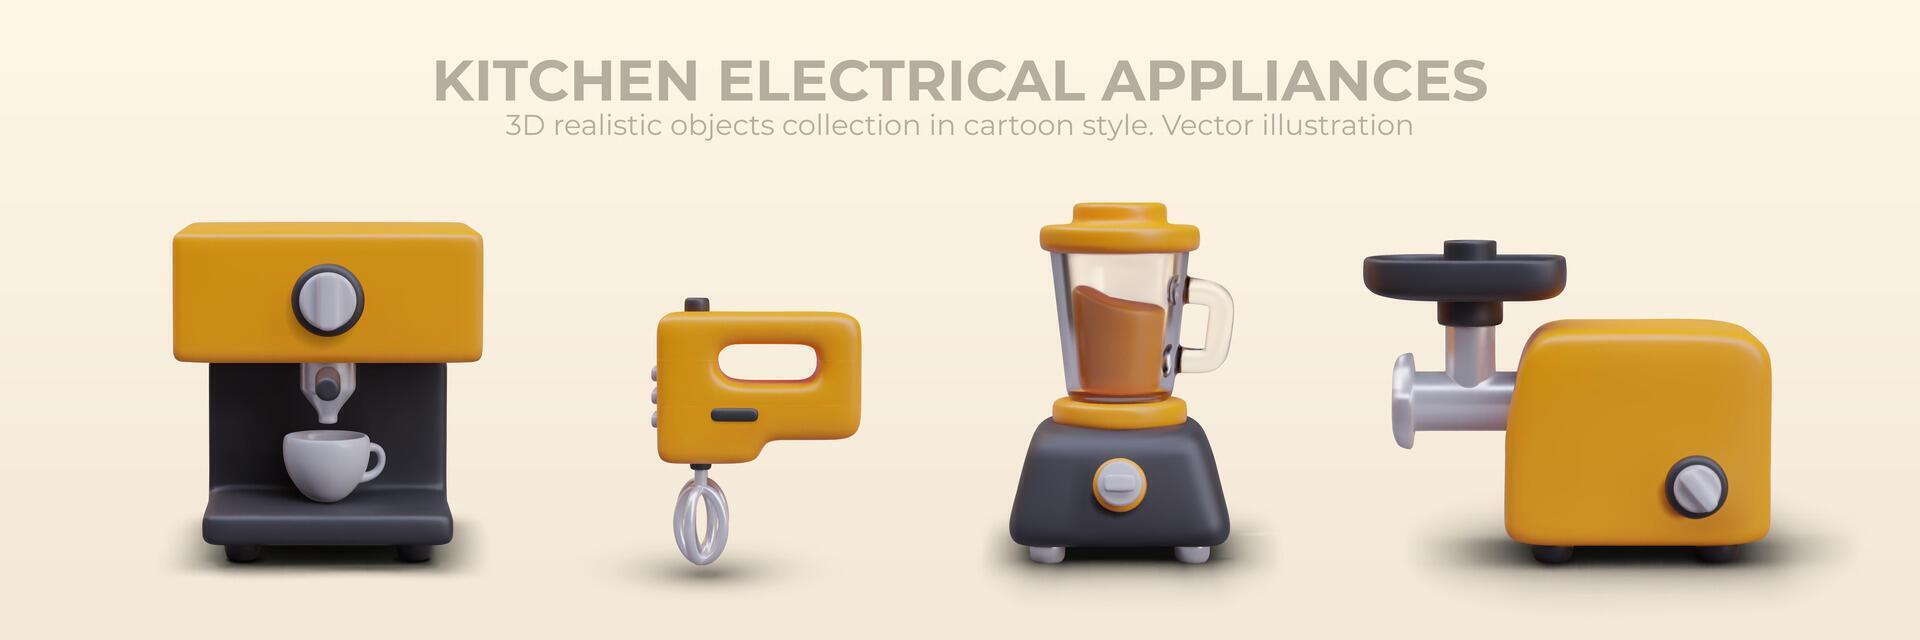 électrique Ménage cuisine appareils électroménagers dans dessin animé style. ensemble de cuisine outils vecteur